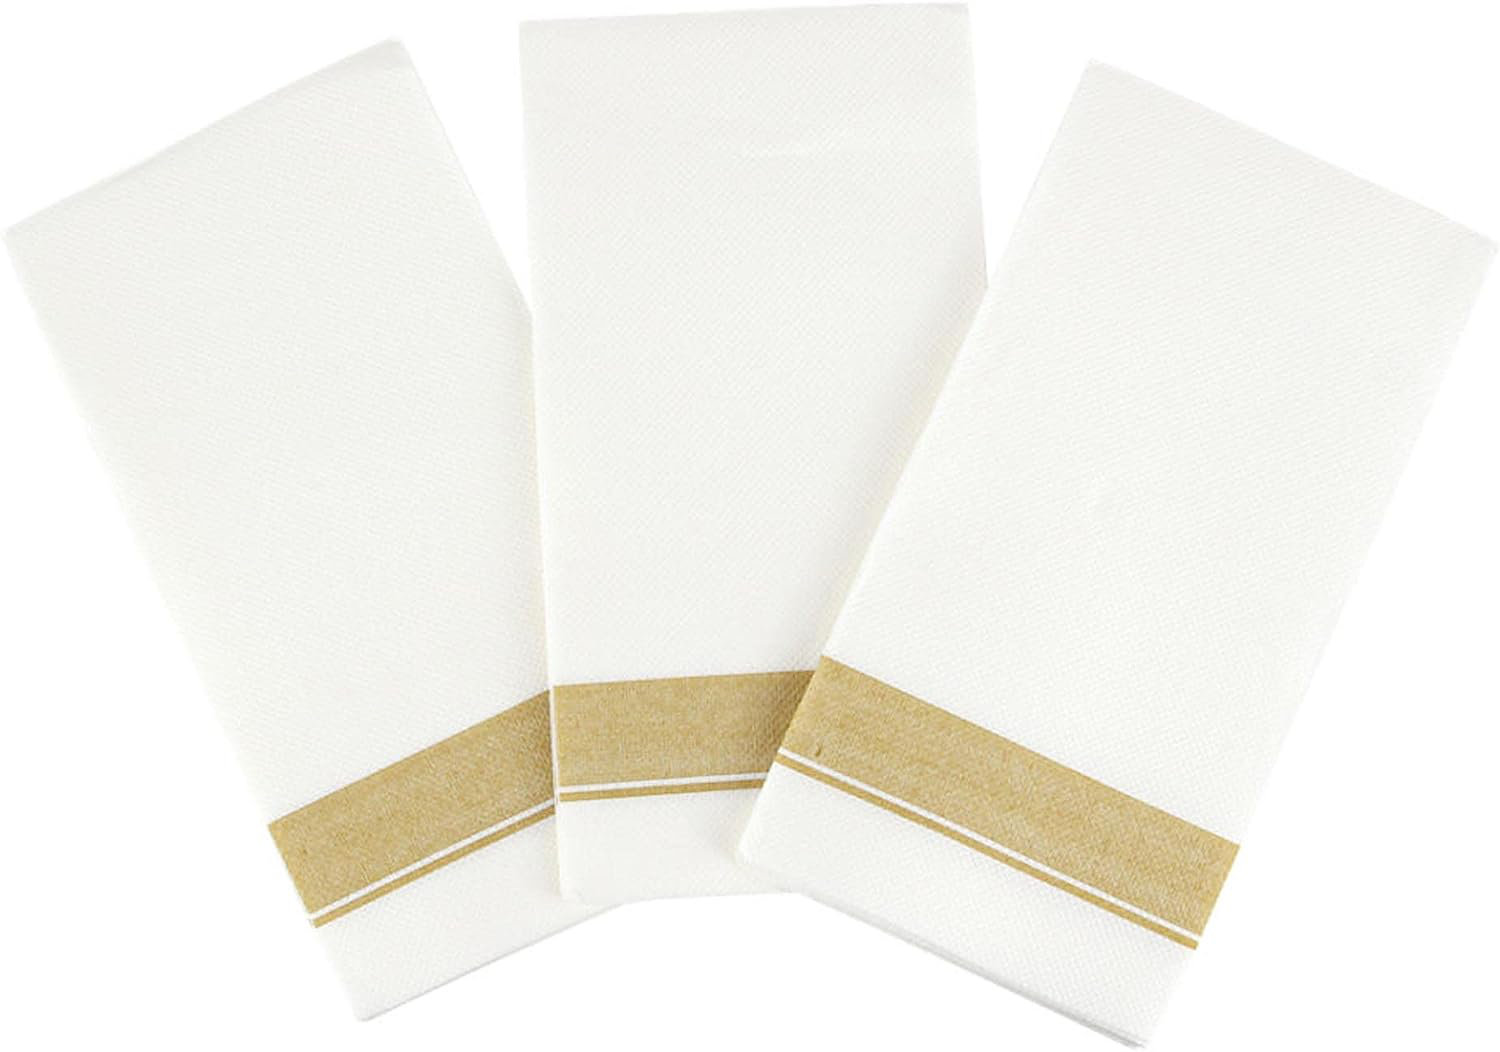 600 Napkins, White Linen-Like Premium Paper Beverage/Cocktail Napkins